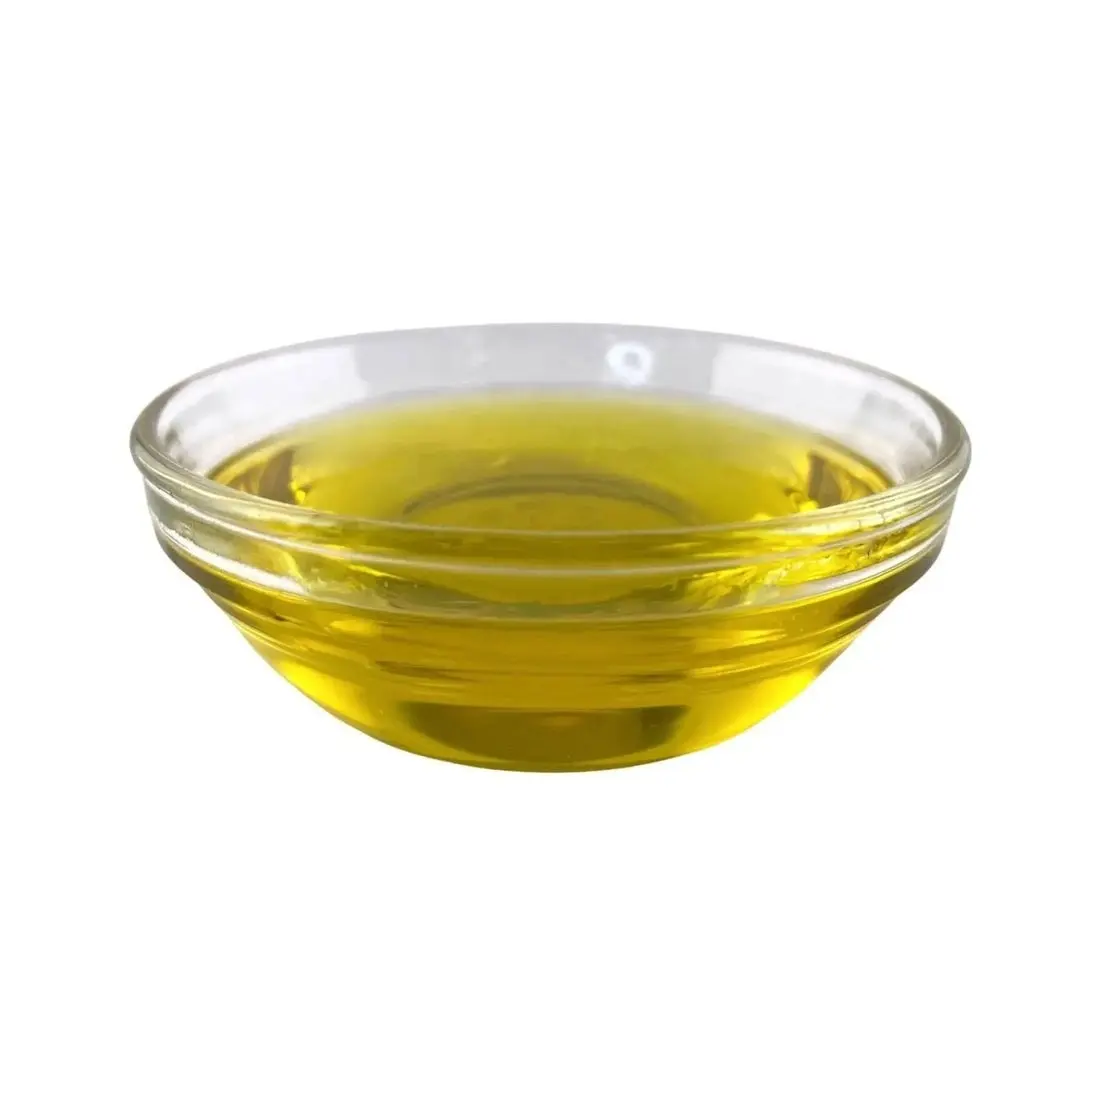 Standard Pflanzenöl Kochen Speiseöl Natürliches Bio Extra Virgin 100% reines Olivenöl